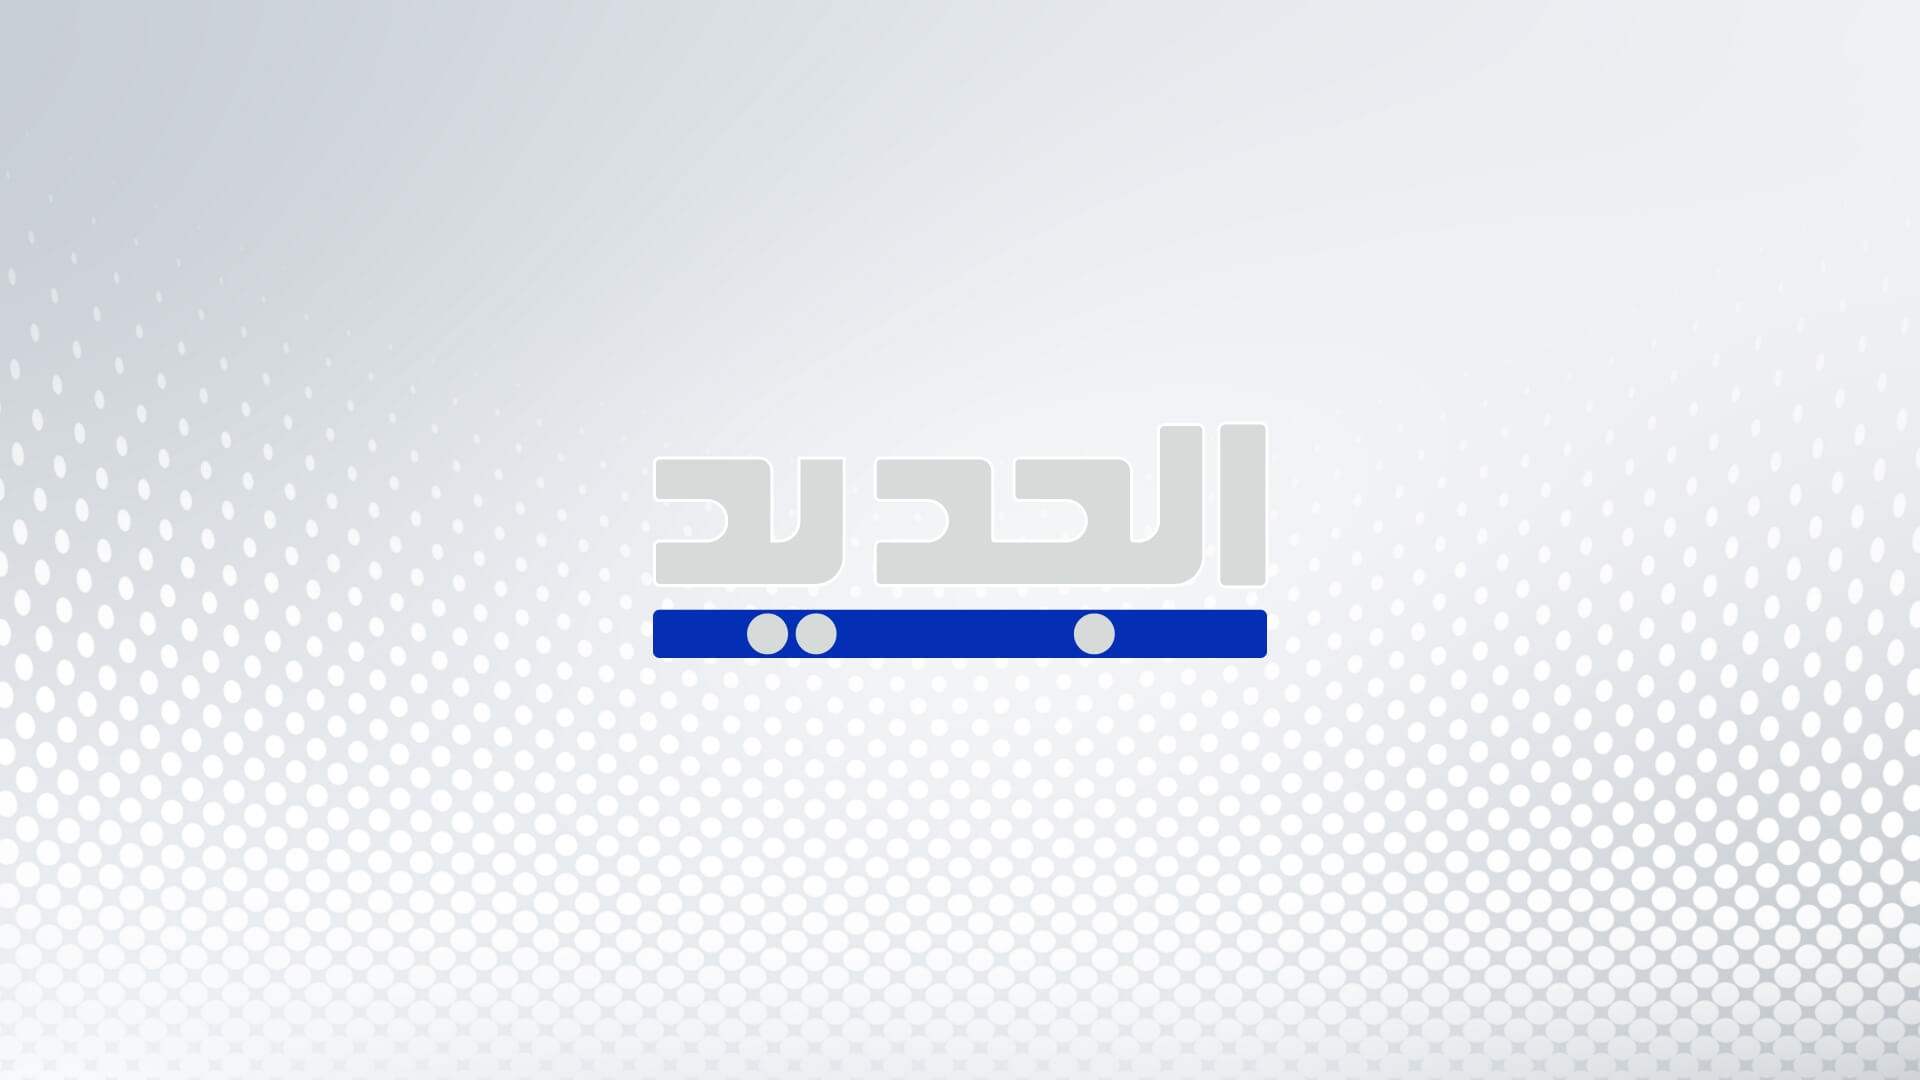 وسائل اعلام الاحتلال : إطلاق صاروخ مضاد للدروع من لبنان تجاه منطقة شتولا بالجليل الغربي